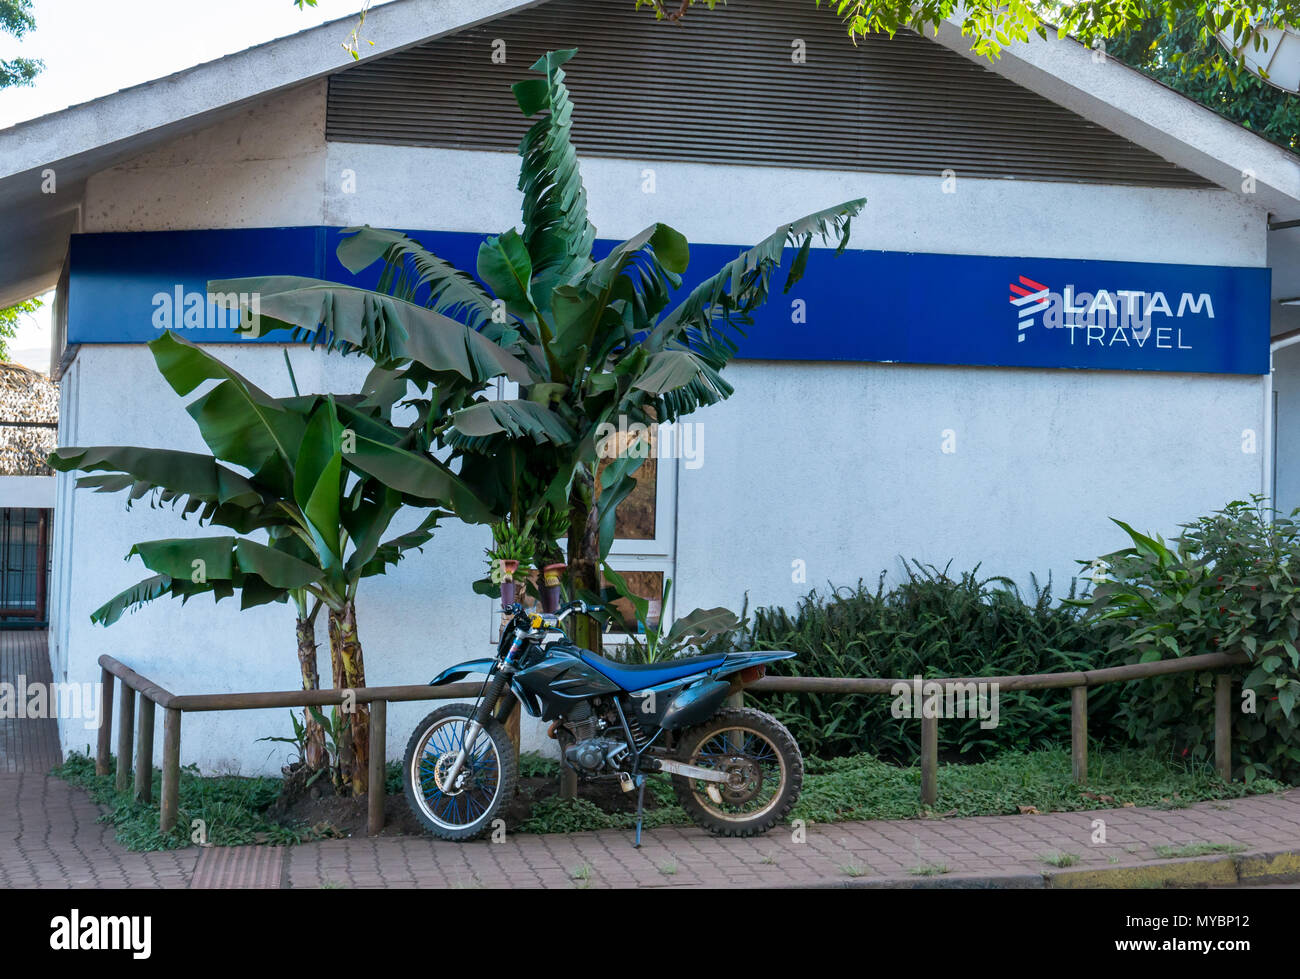 Agent de voyage Latam bâtiment avec moto garée à côté de bananiers, d'Hanga Roa, l'île de Pâques, Chili Banque D'Images